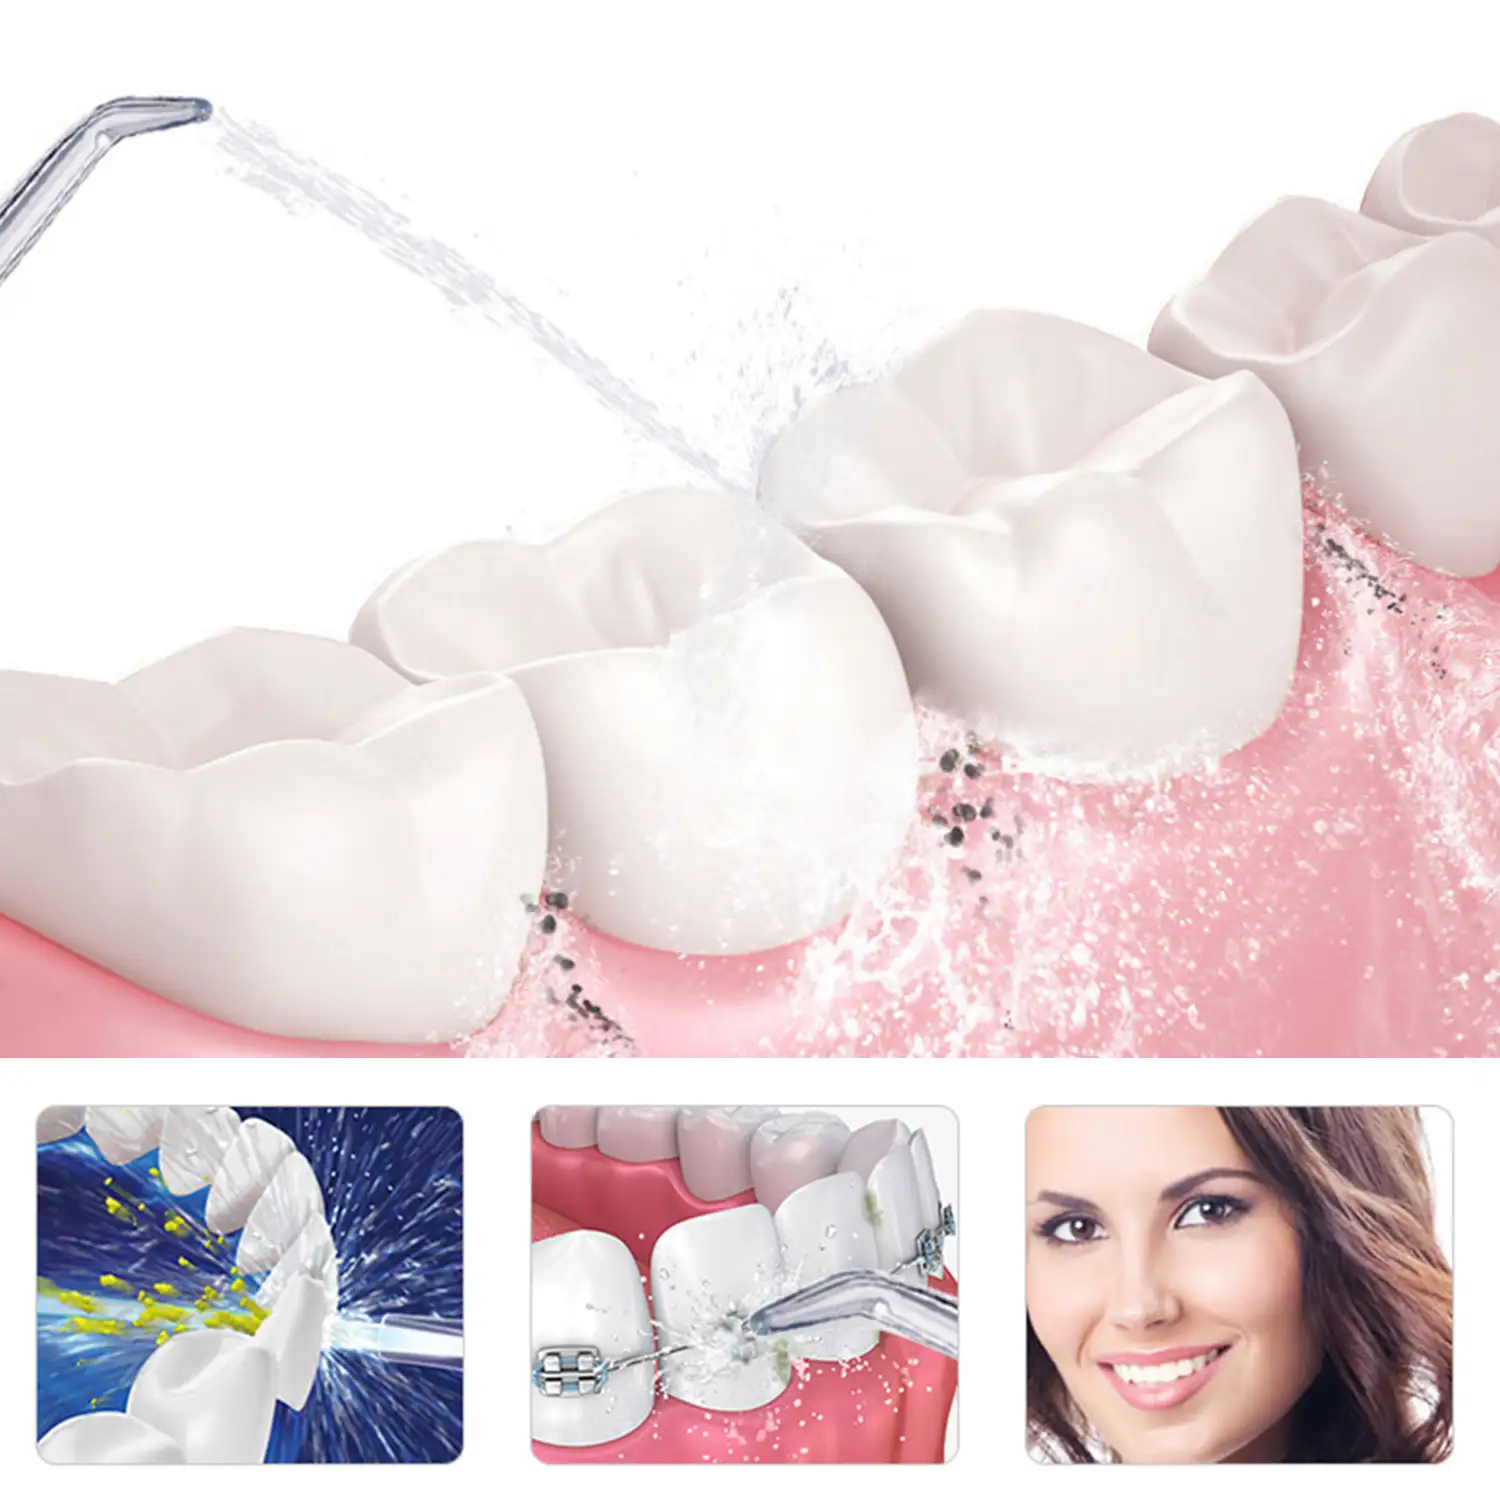 Irrigador bucal limpieza y belleza integral de tus dientes. Tecnología de pulsión alta frecuancia.Con 3 cabezales.